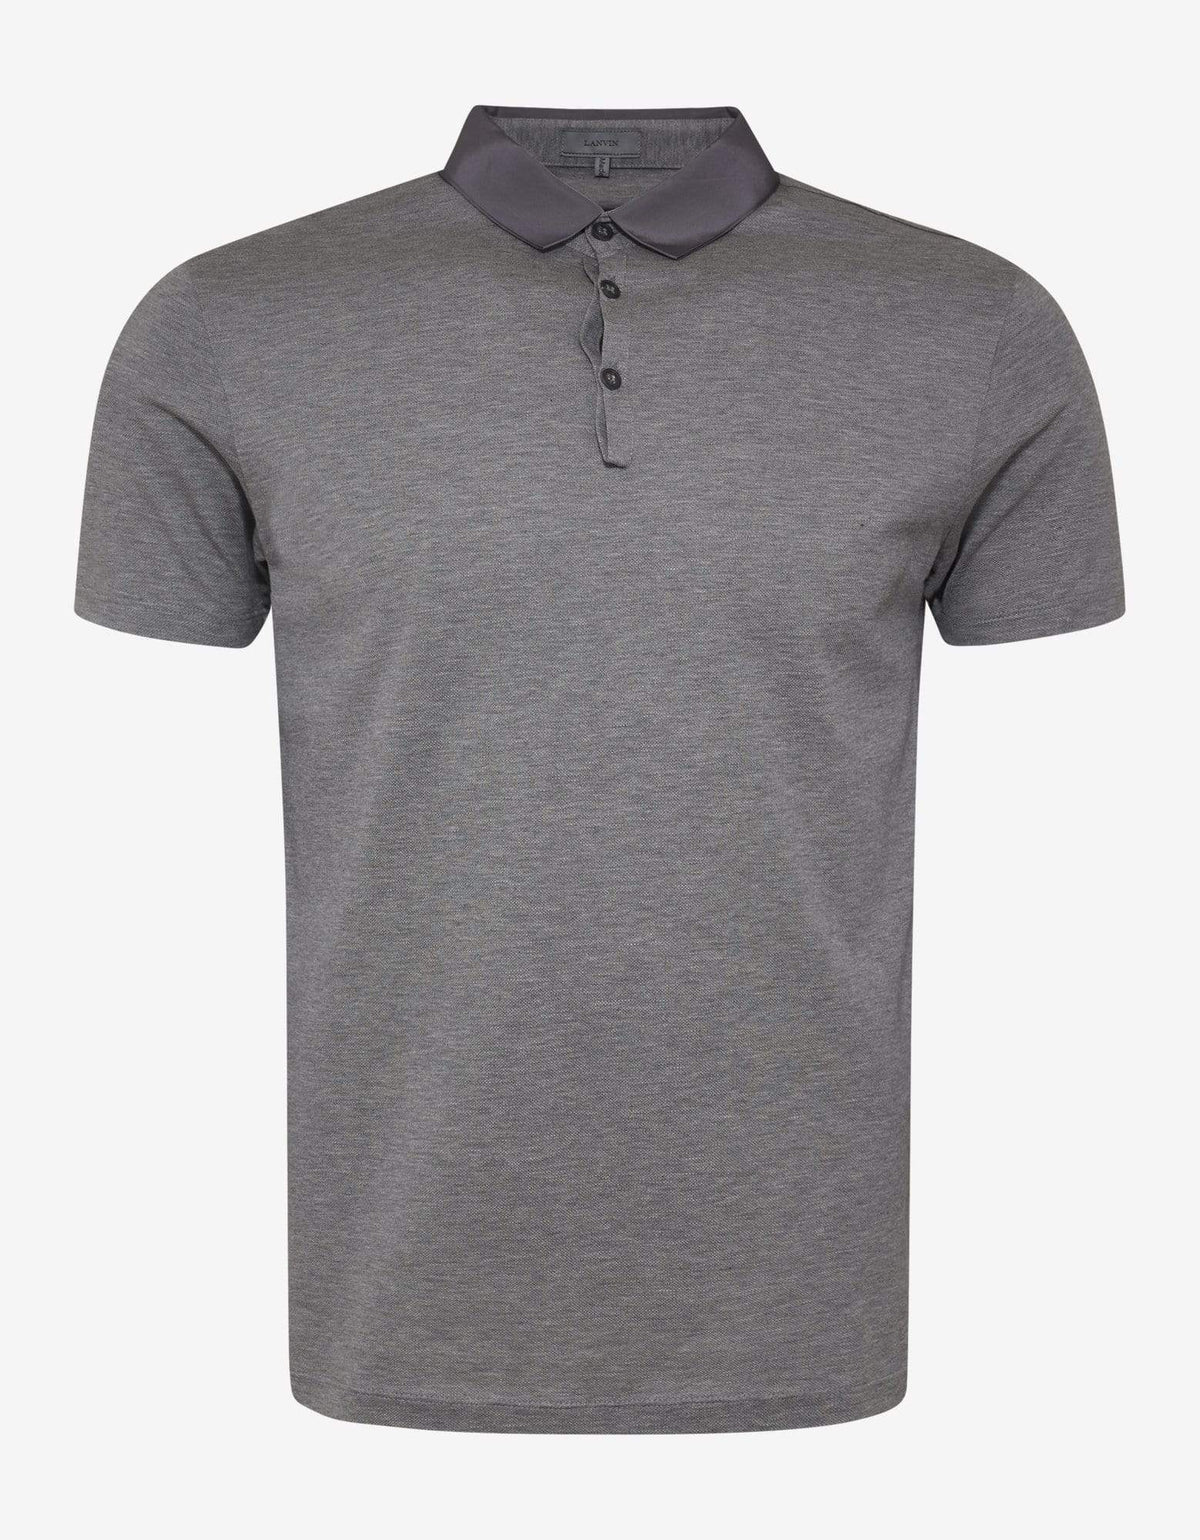 Lanvin Grey Grosgrain Collar Polo T-Shirt